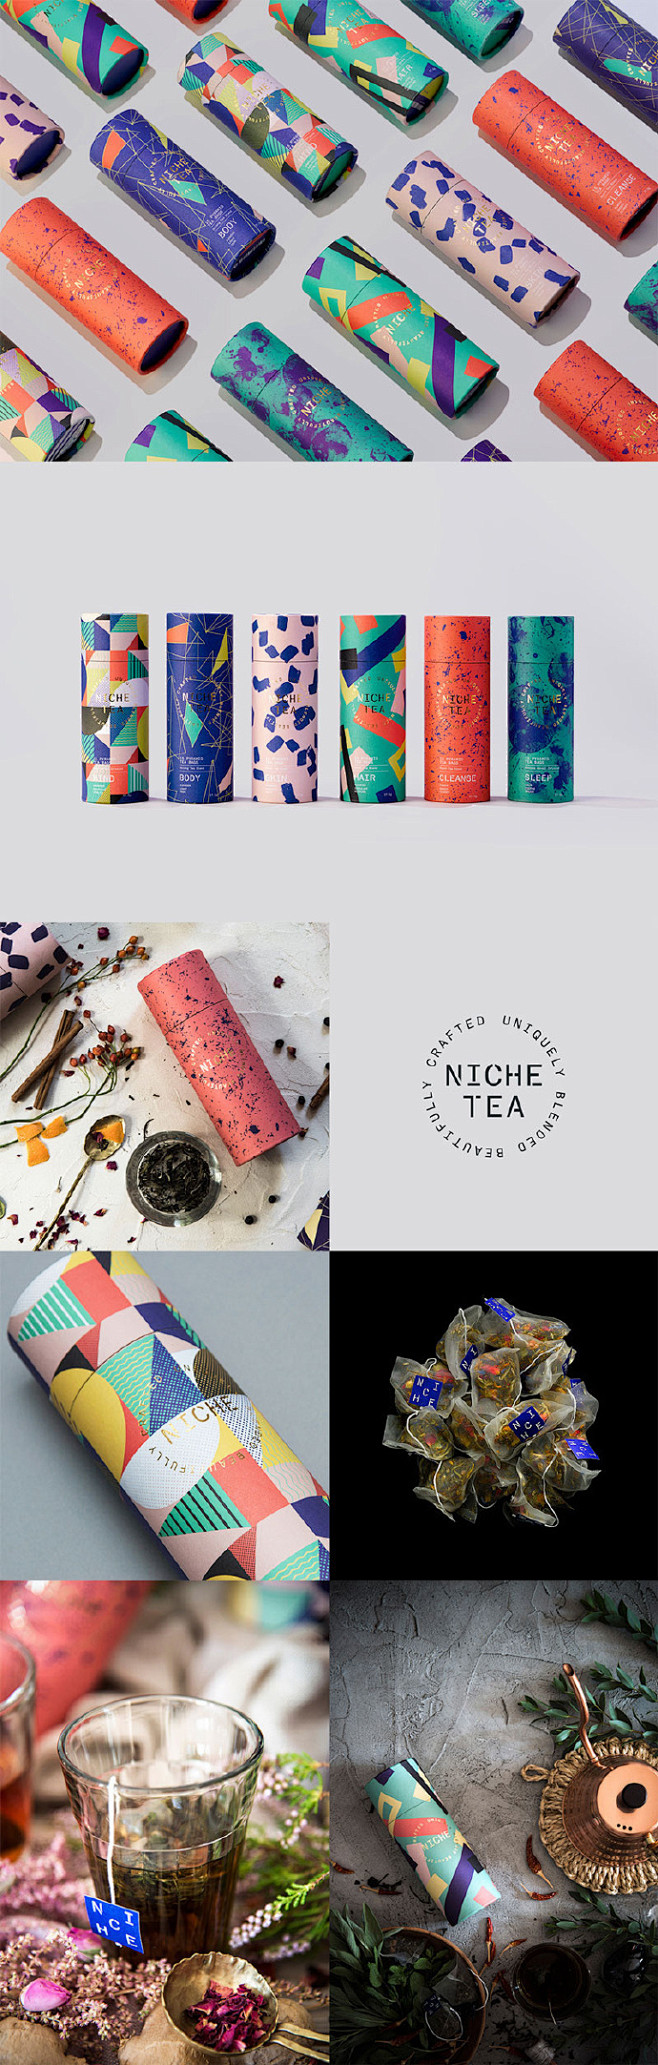 #设计视角# 一组茶包装设计作品欣赏。 ...